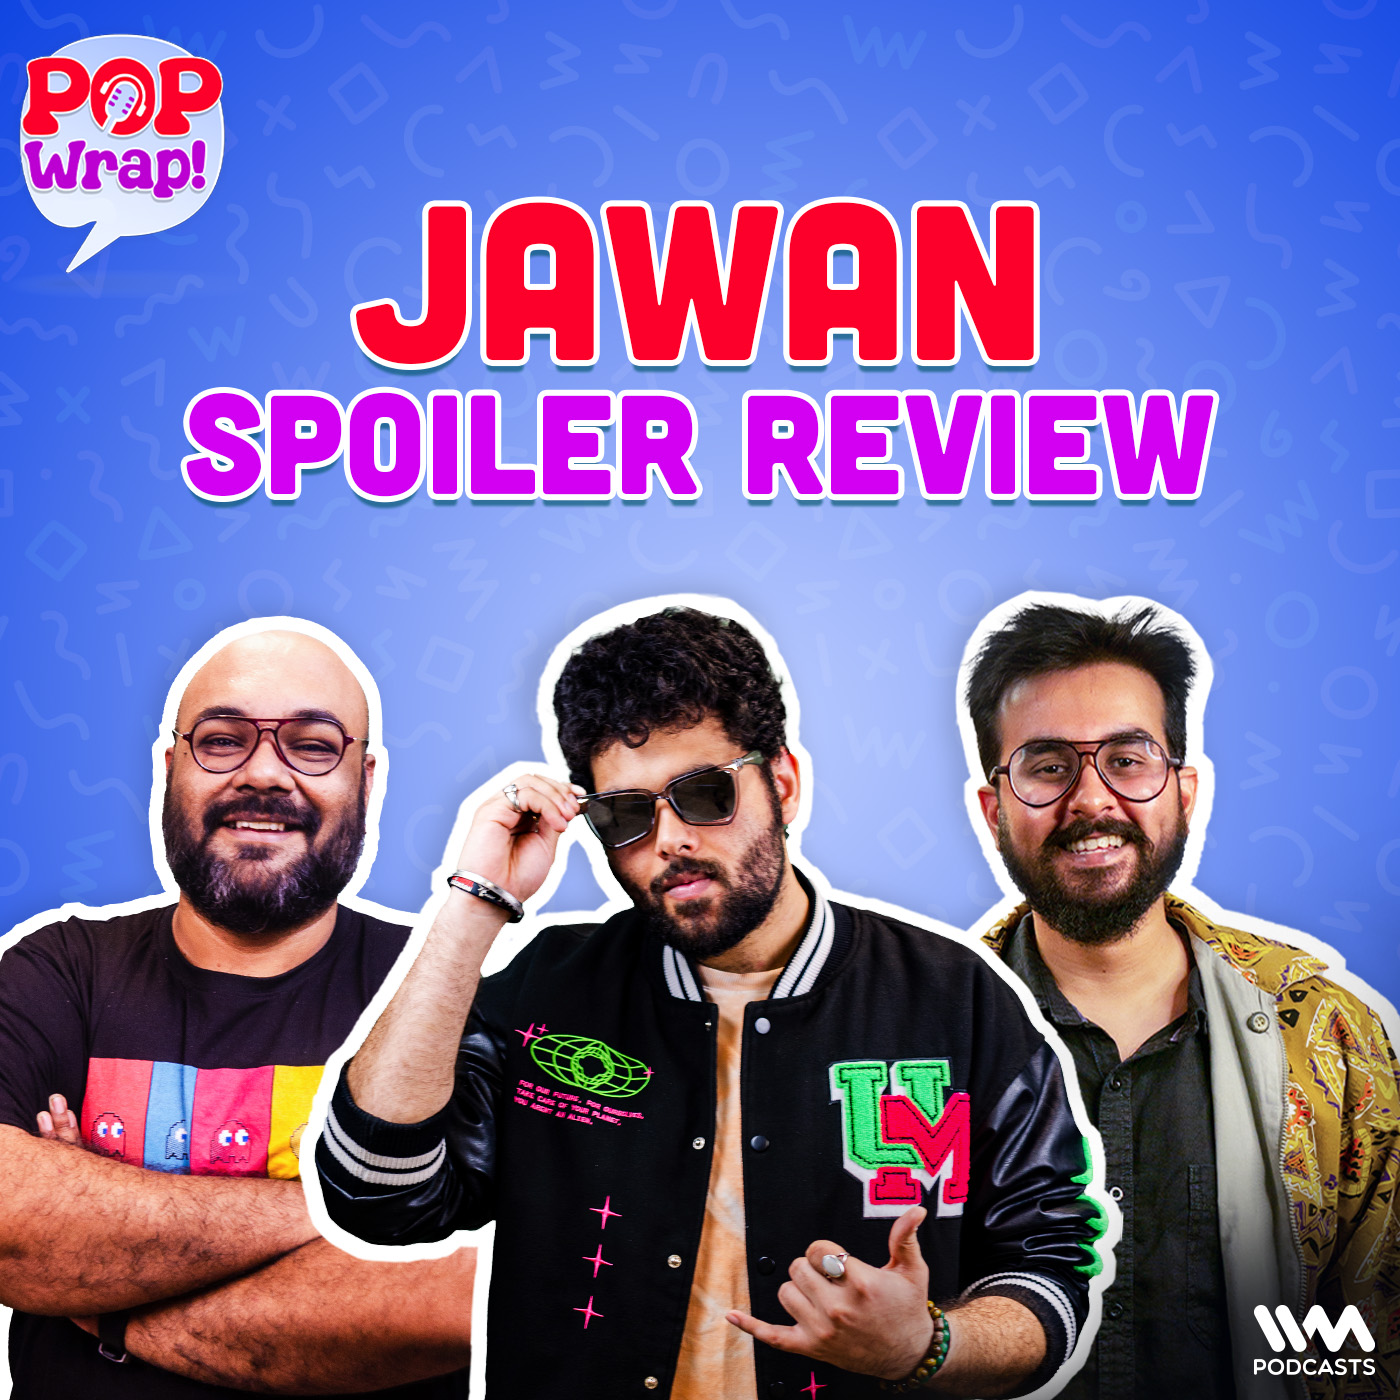 Jawan Spoiler Review | Pop Wrap!